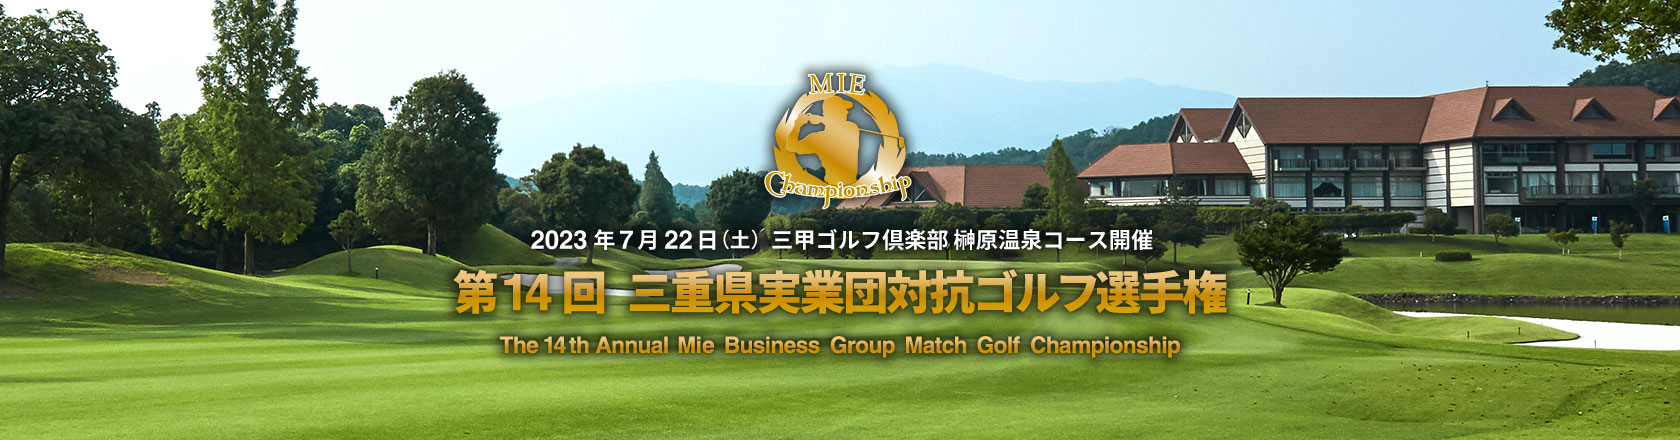 第13回 三重県実業団対抗ゴルフ選手権